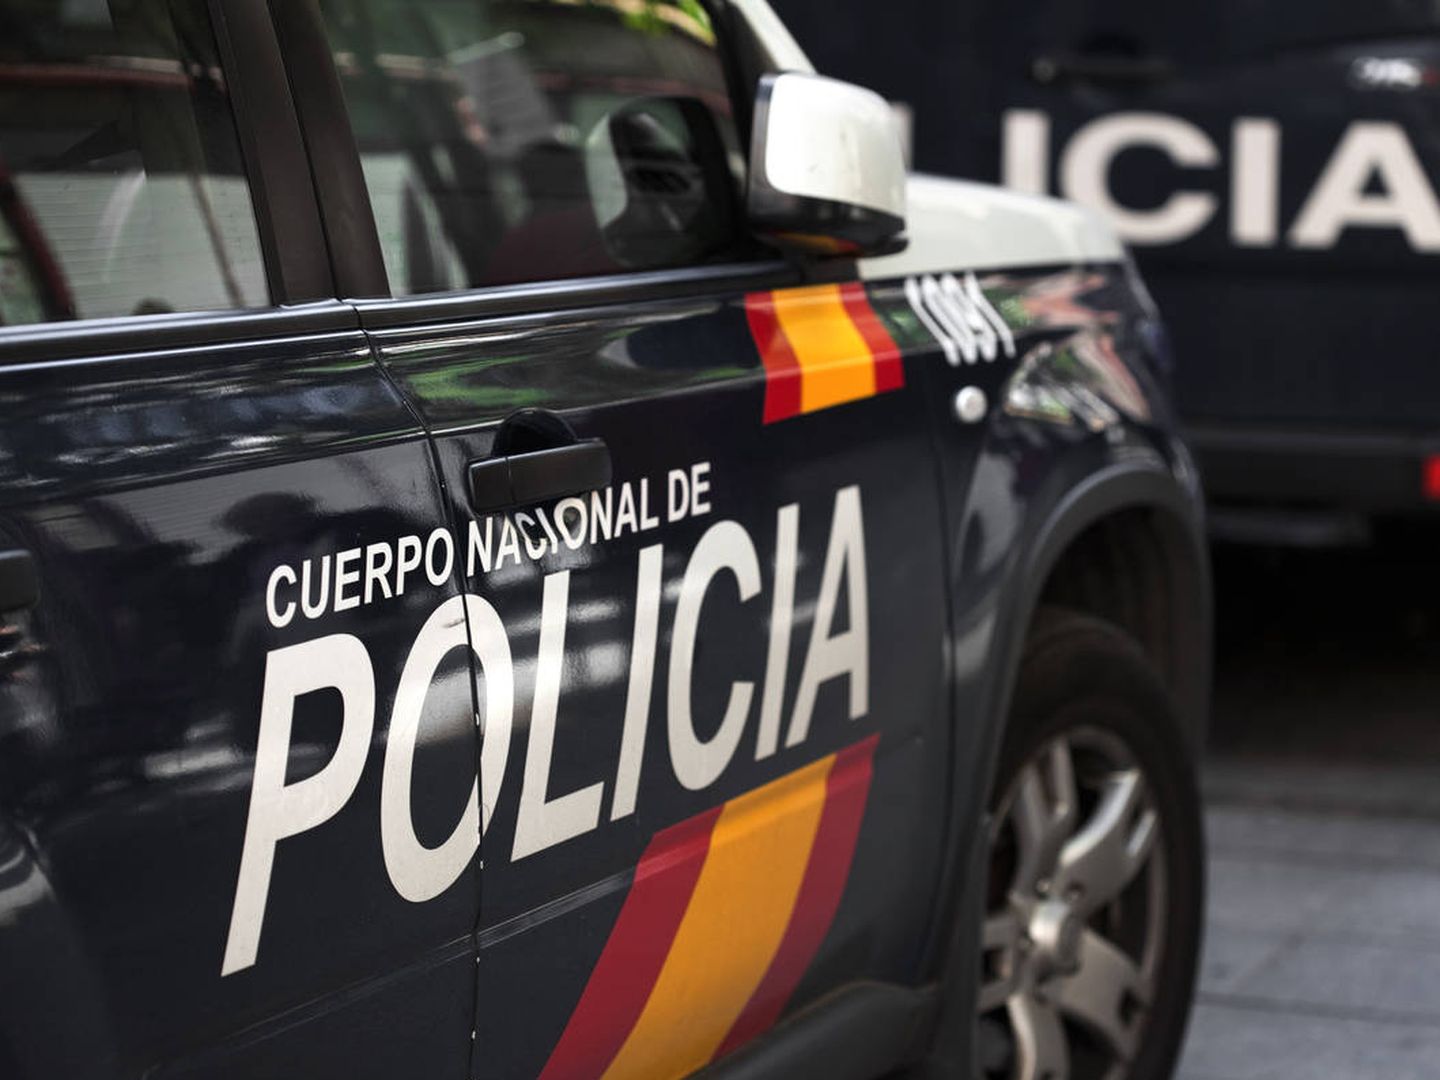 Un vehículo de la Policía Nacional en Almería. (iStock)